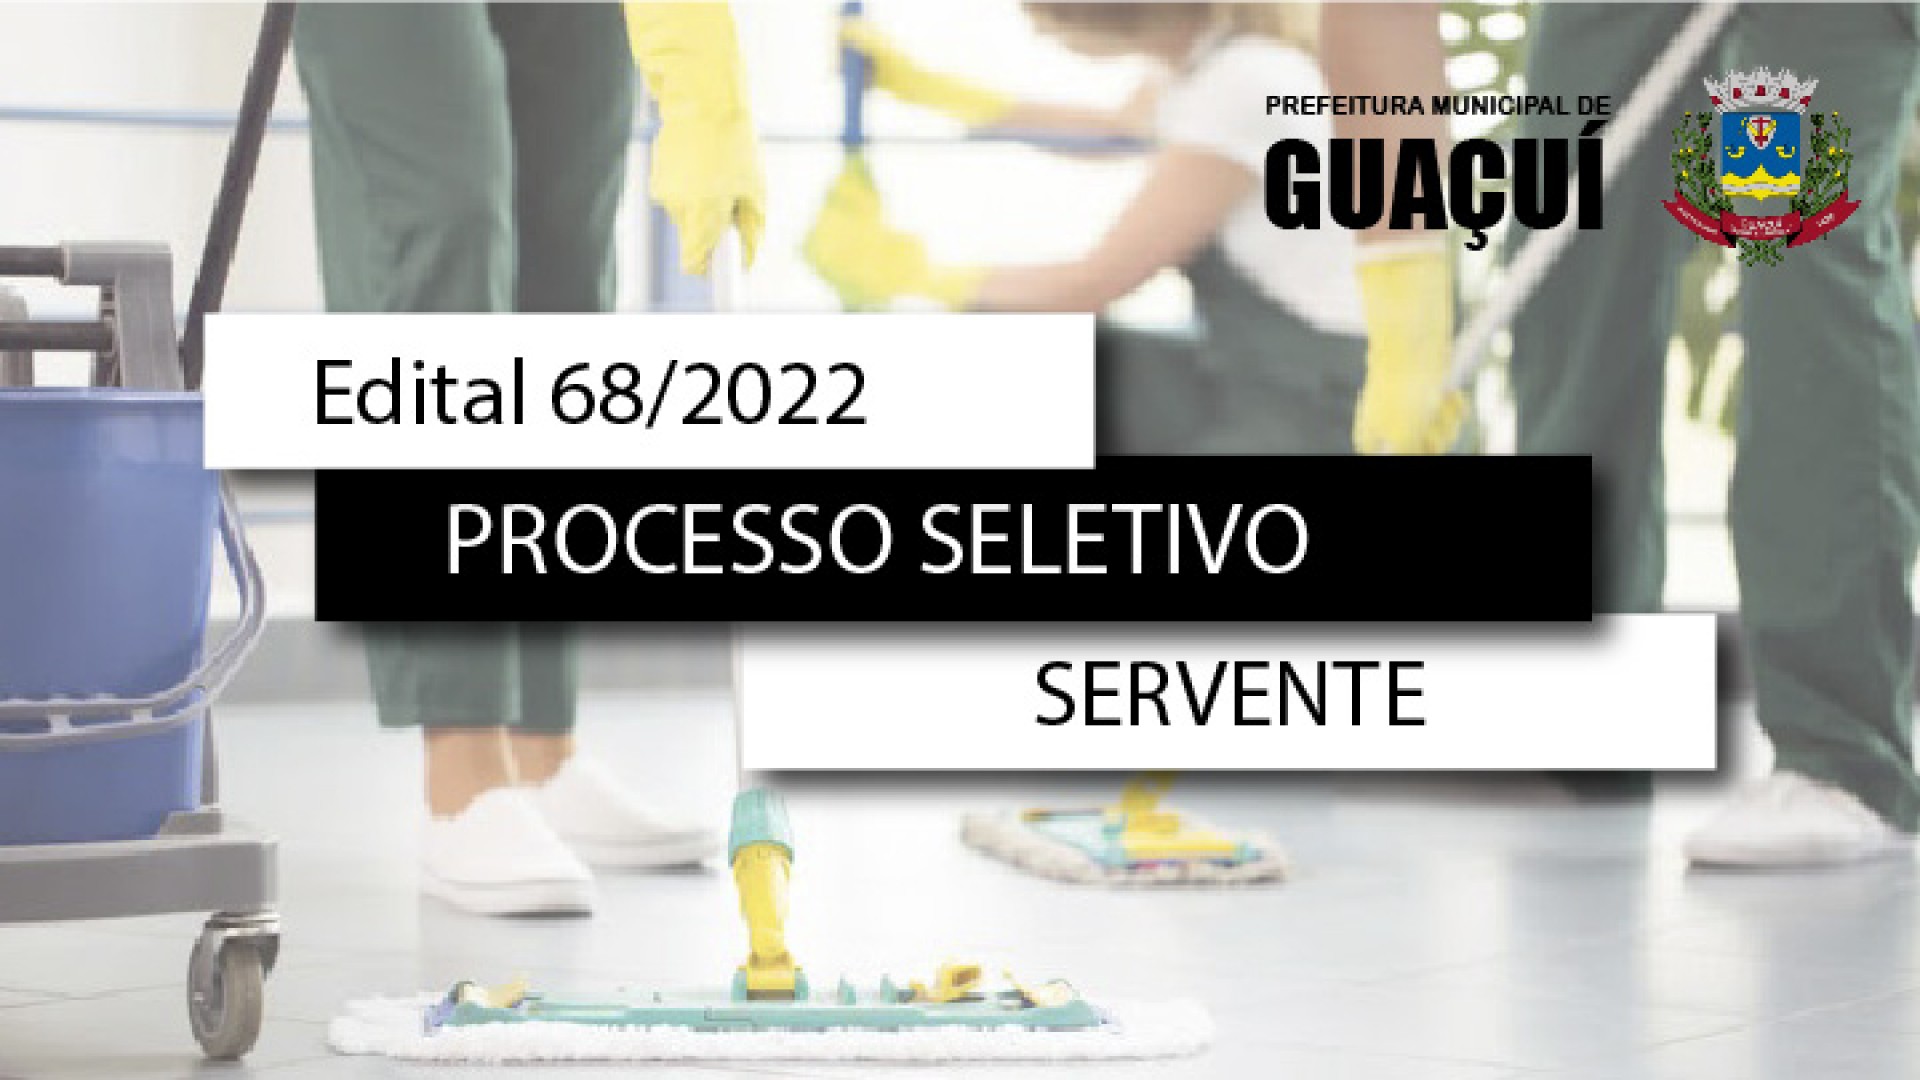 EDITAL EDUCAÇÃO Nº 068/2022 - SERVENTE